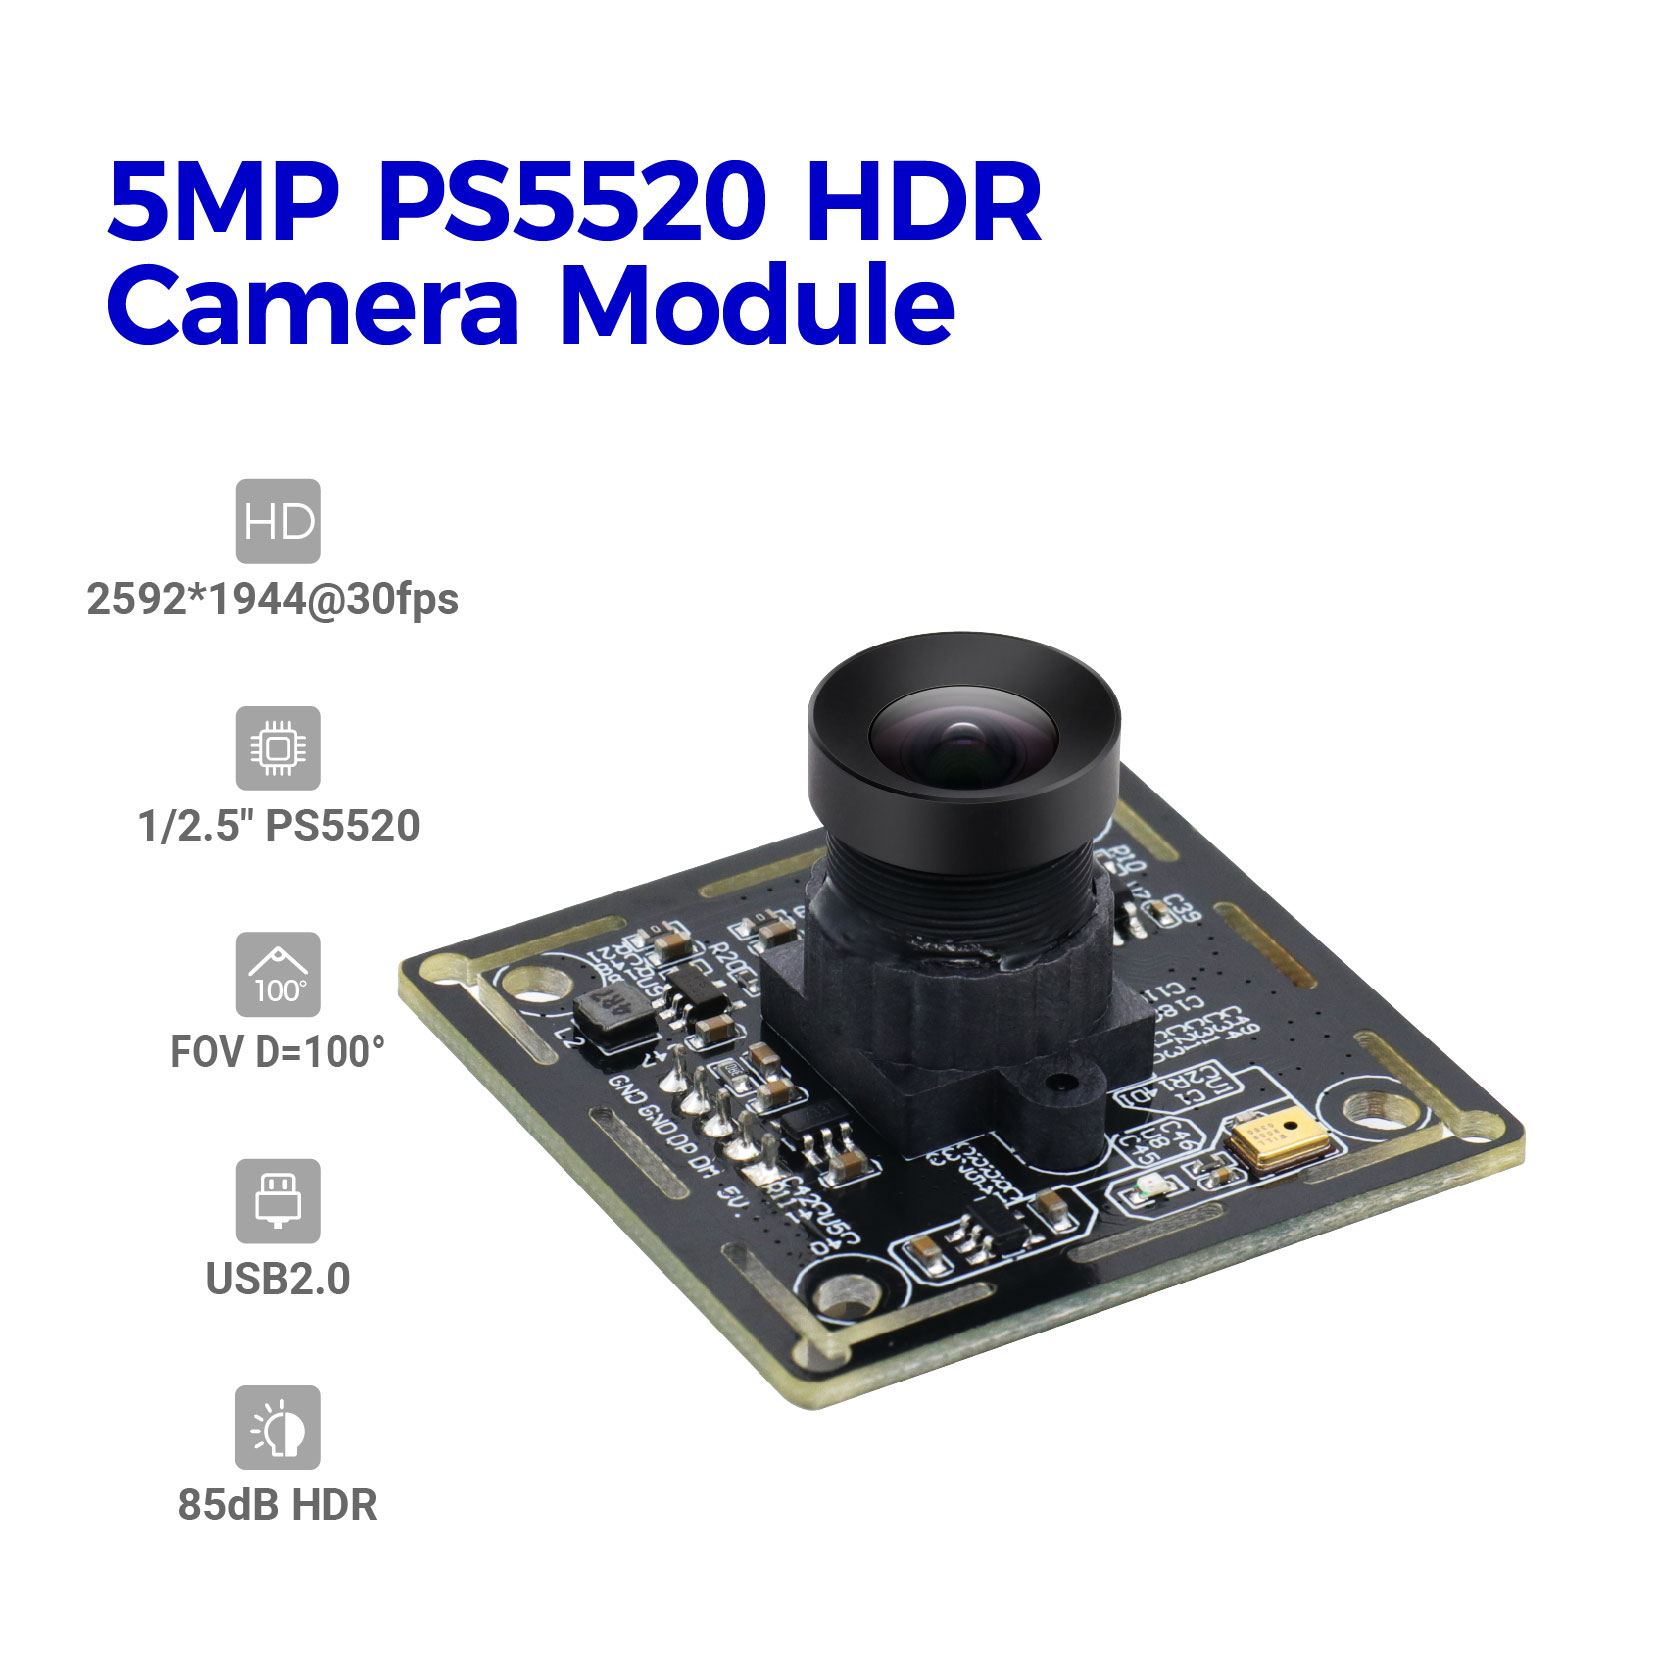 ម៉ូឌុលកាមេរ៉ា 5MP PS5520 HDR